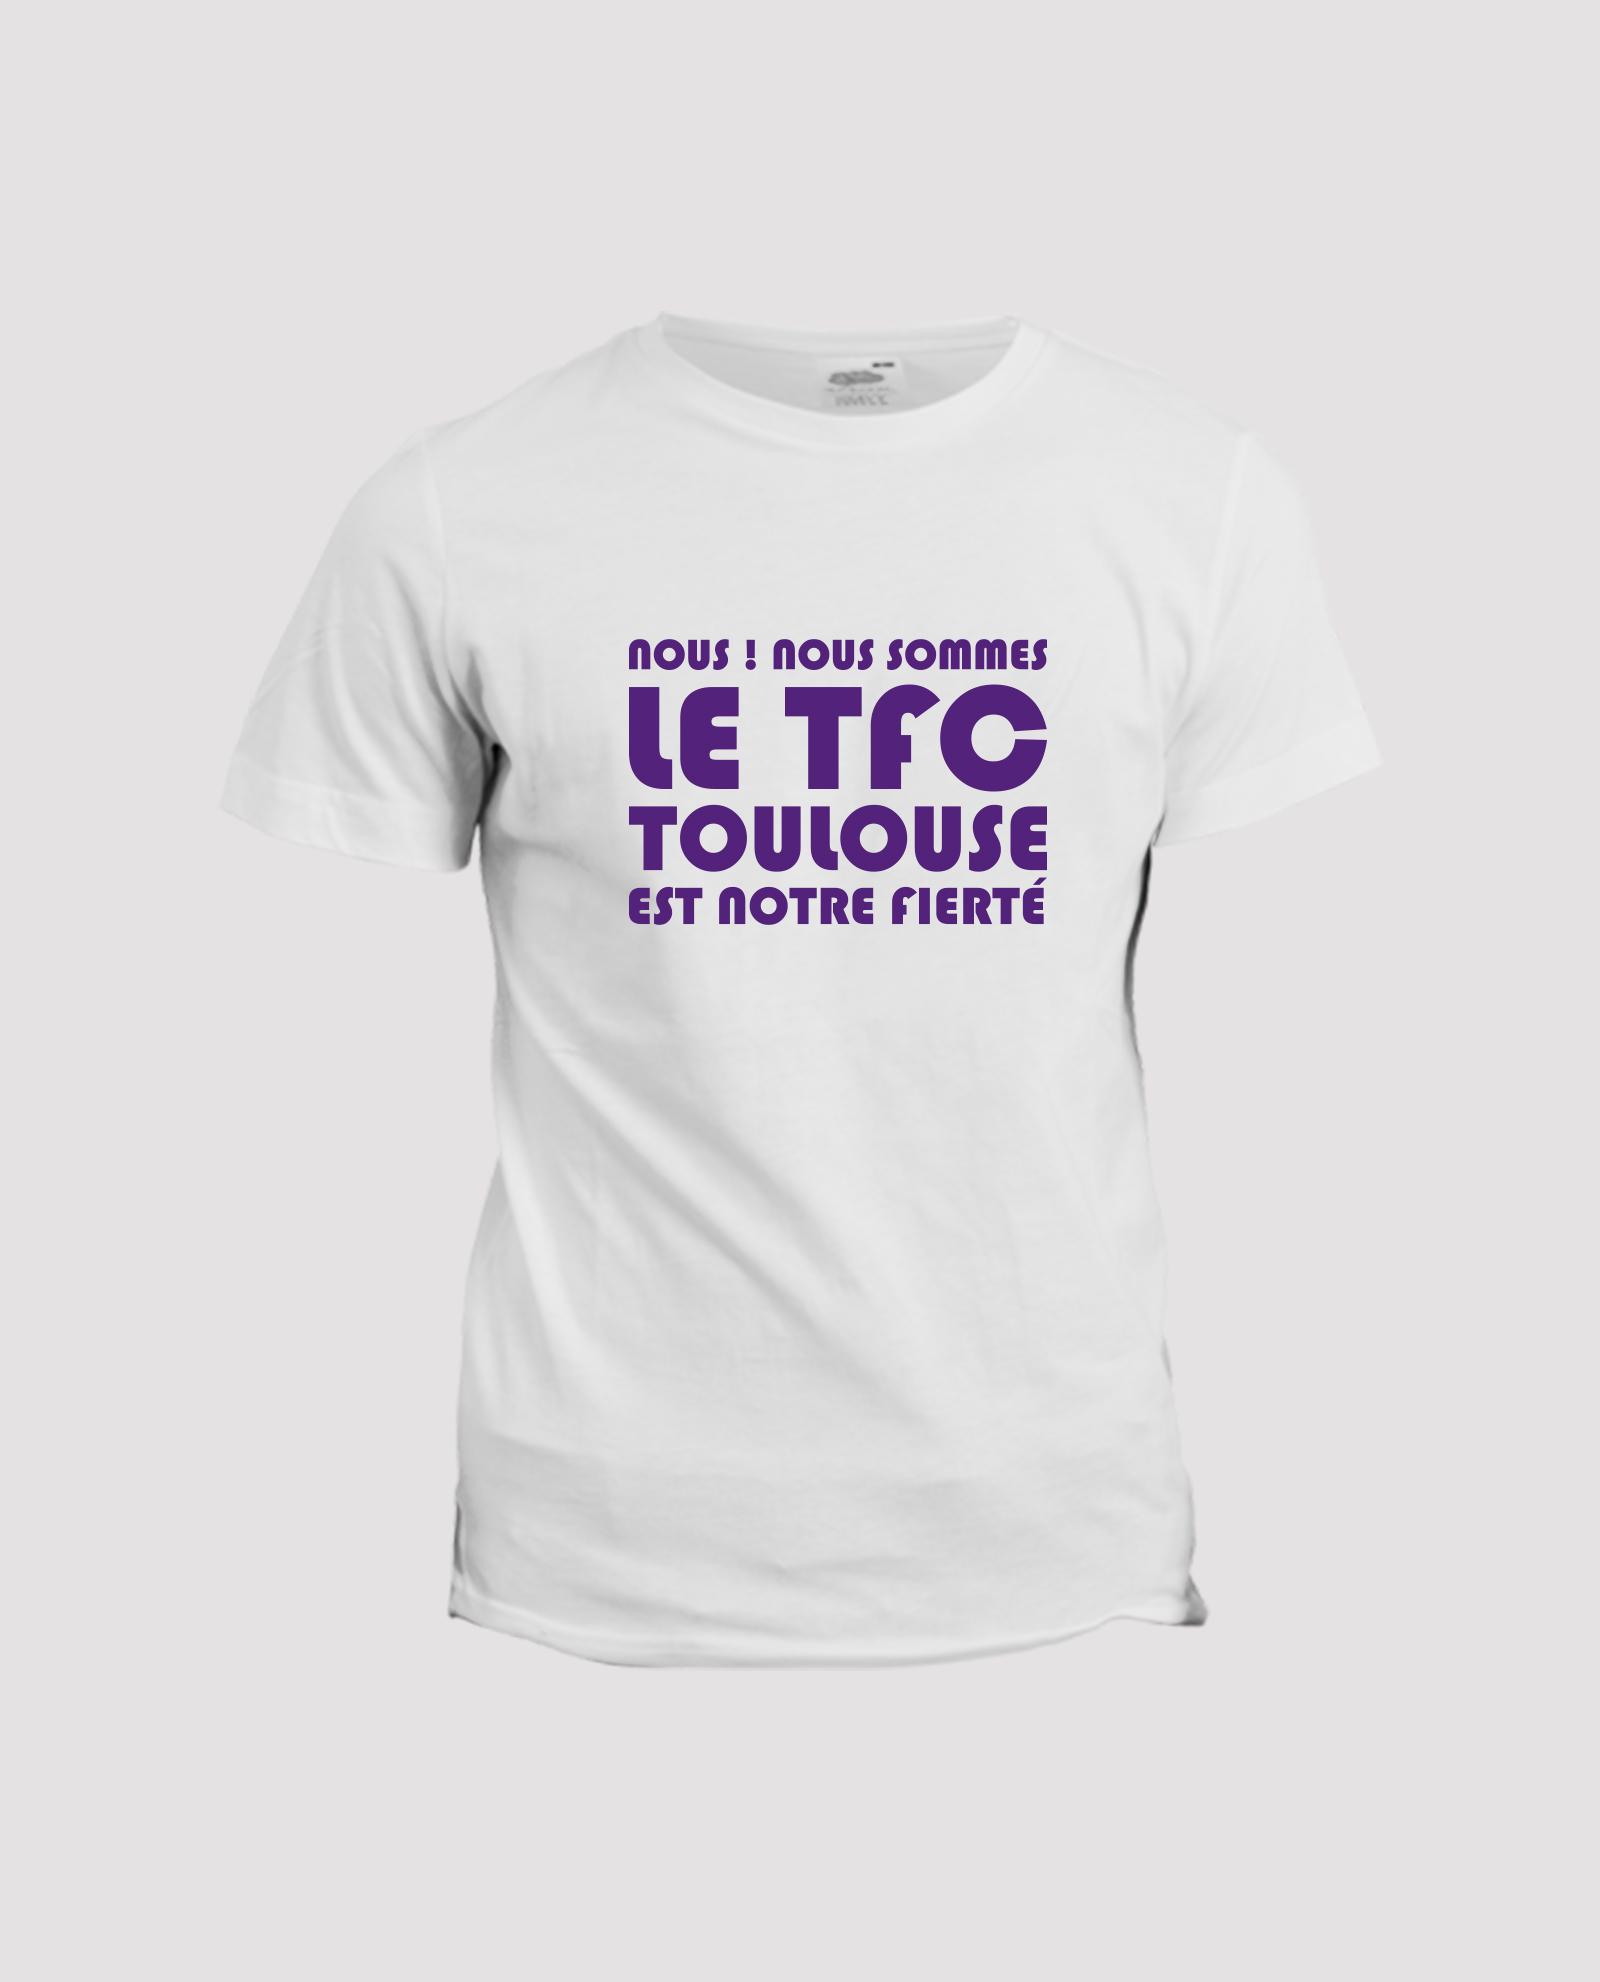 la-ligne-shop-t-shirt-blanc-chant-supporter-toulouse-nous-nous-sommes-le-TFC-v3